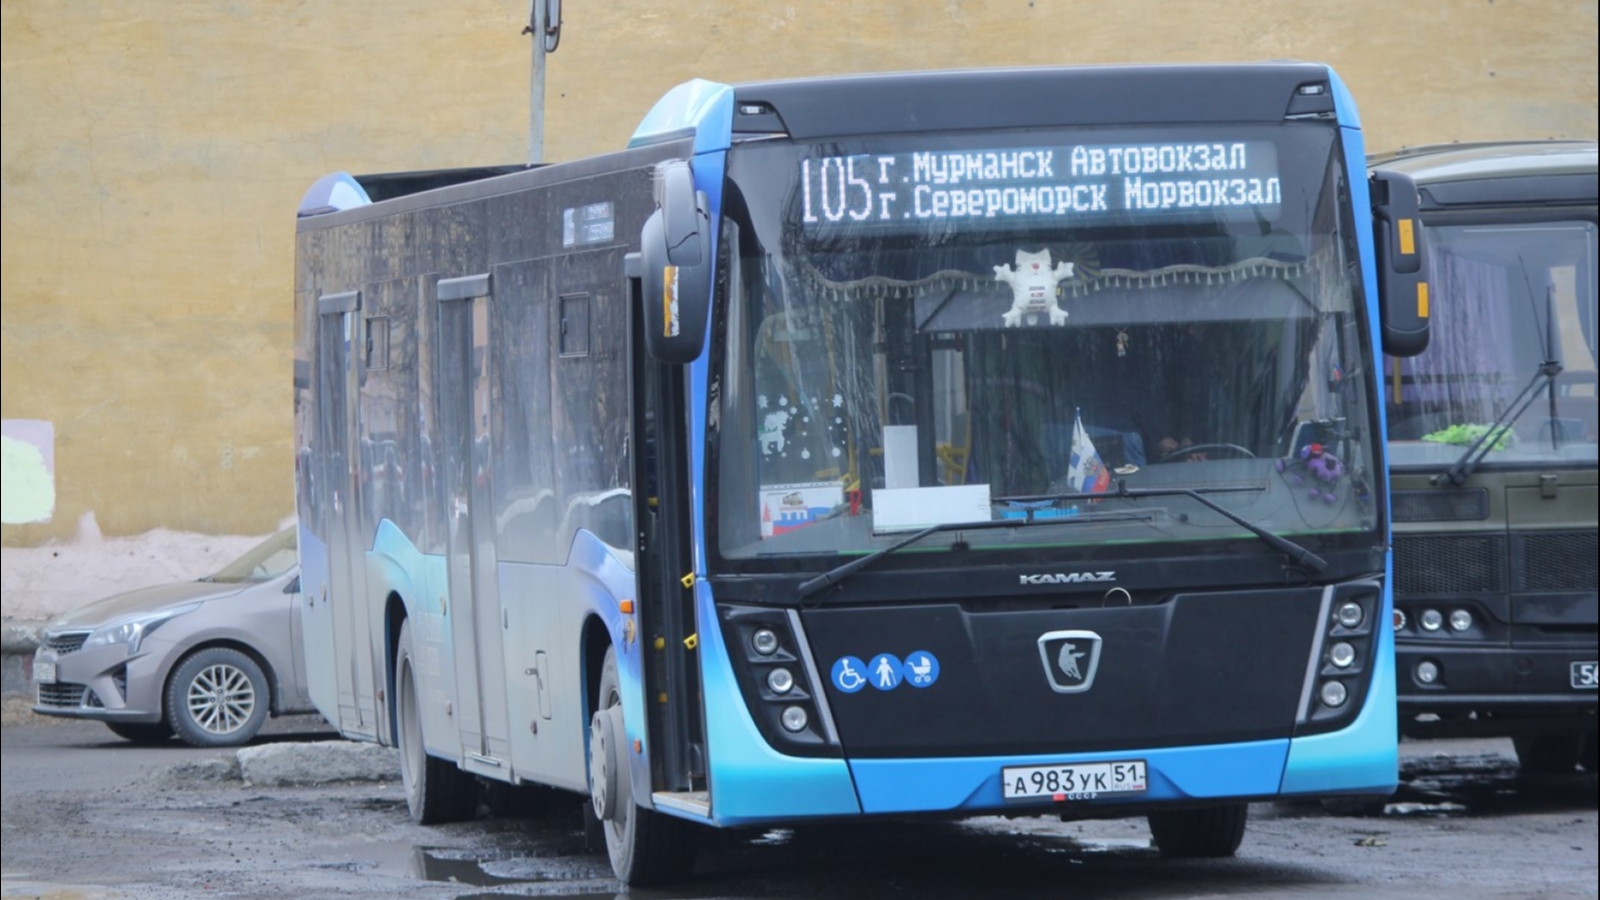 К зиме Мурманск будет с новыми фонарями и автобусами